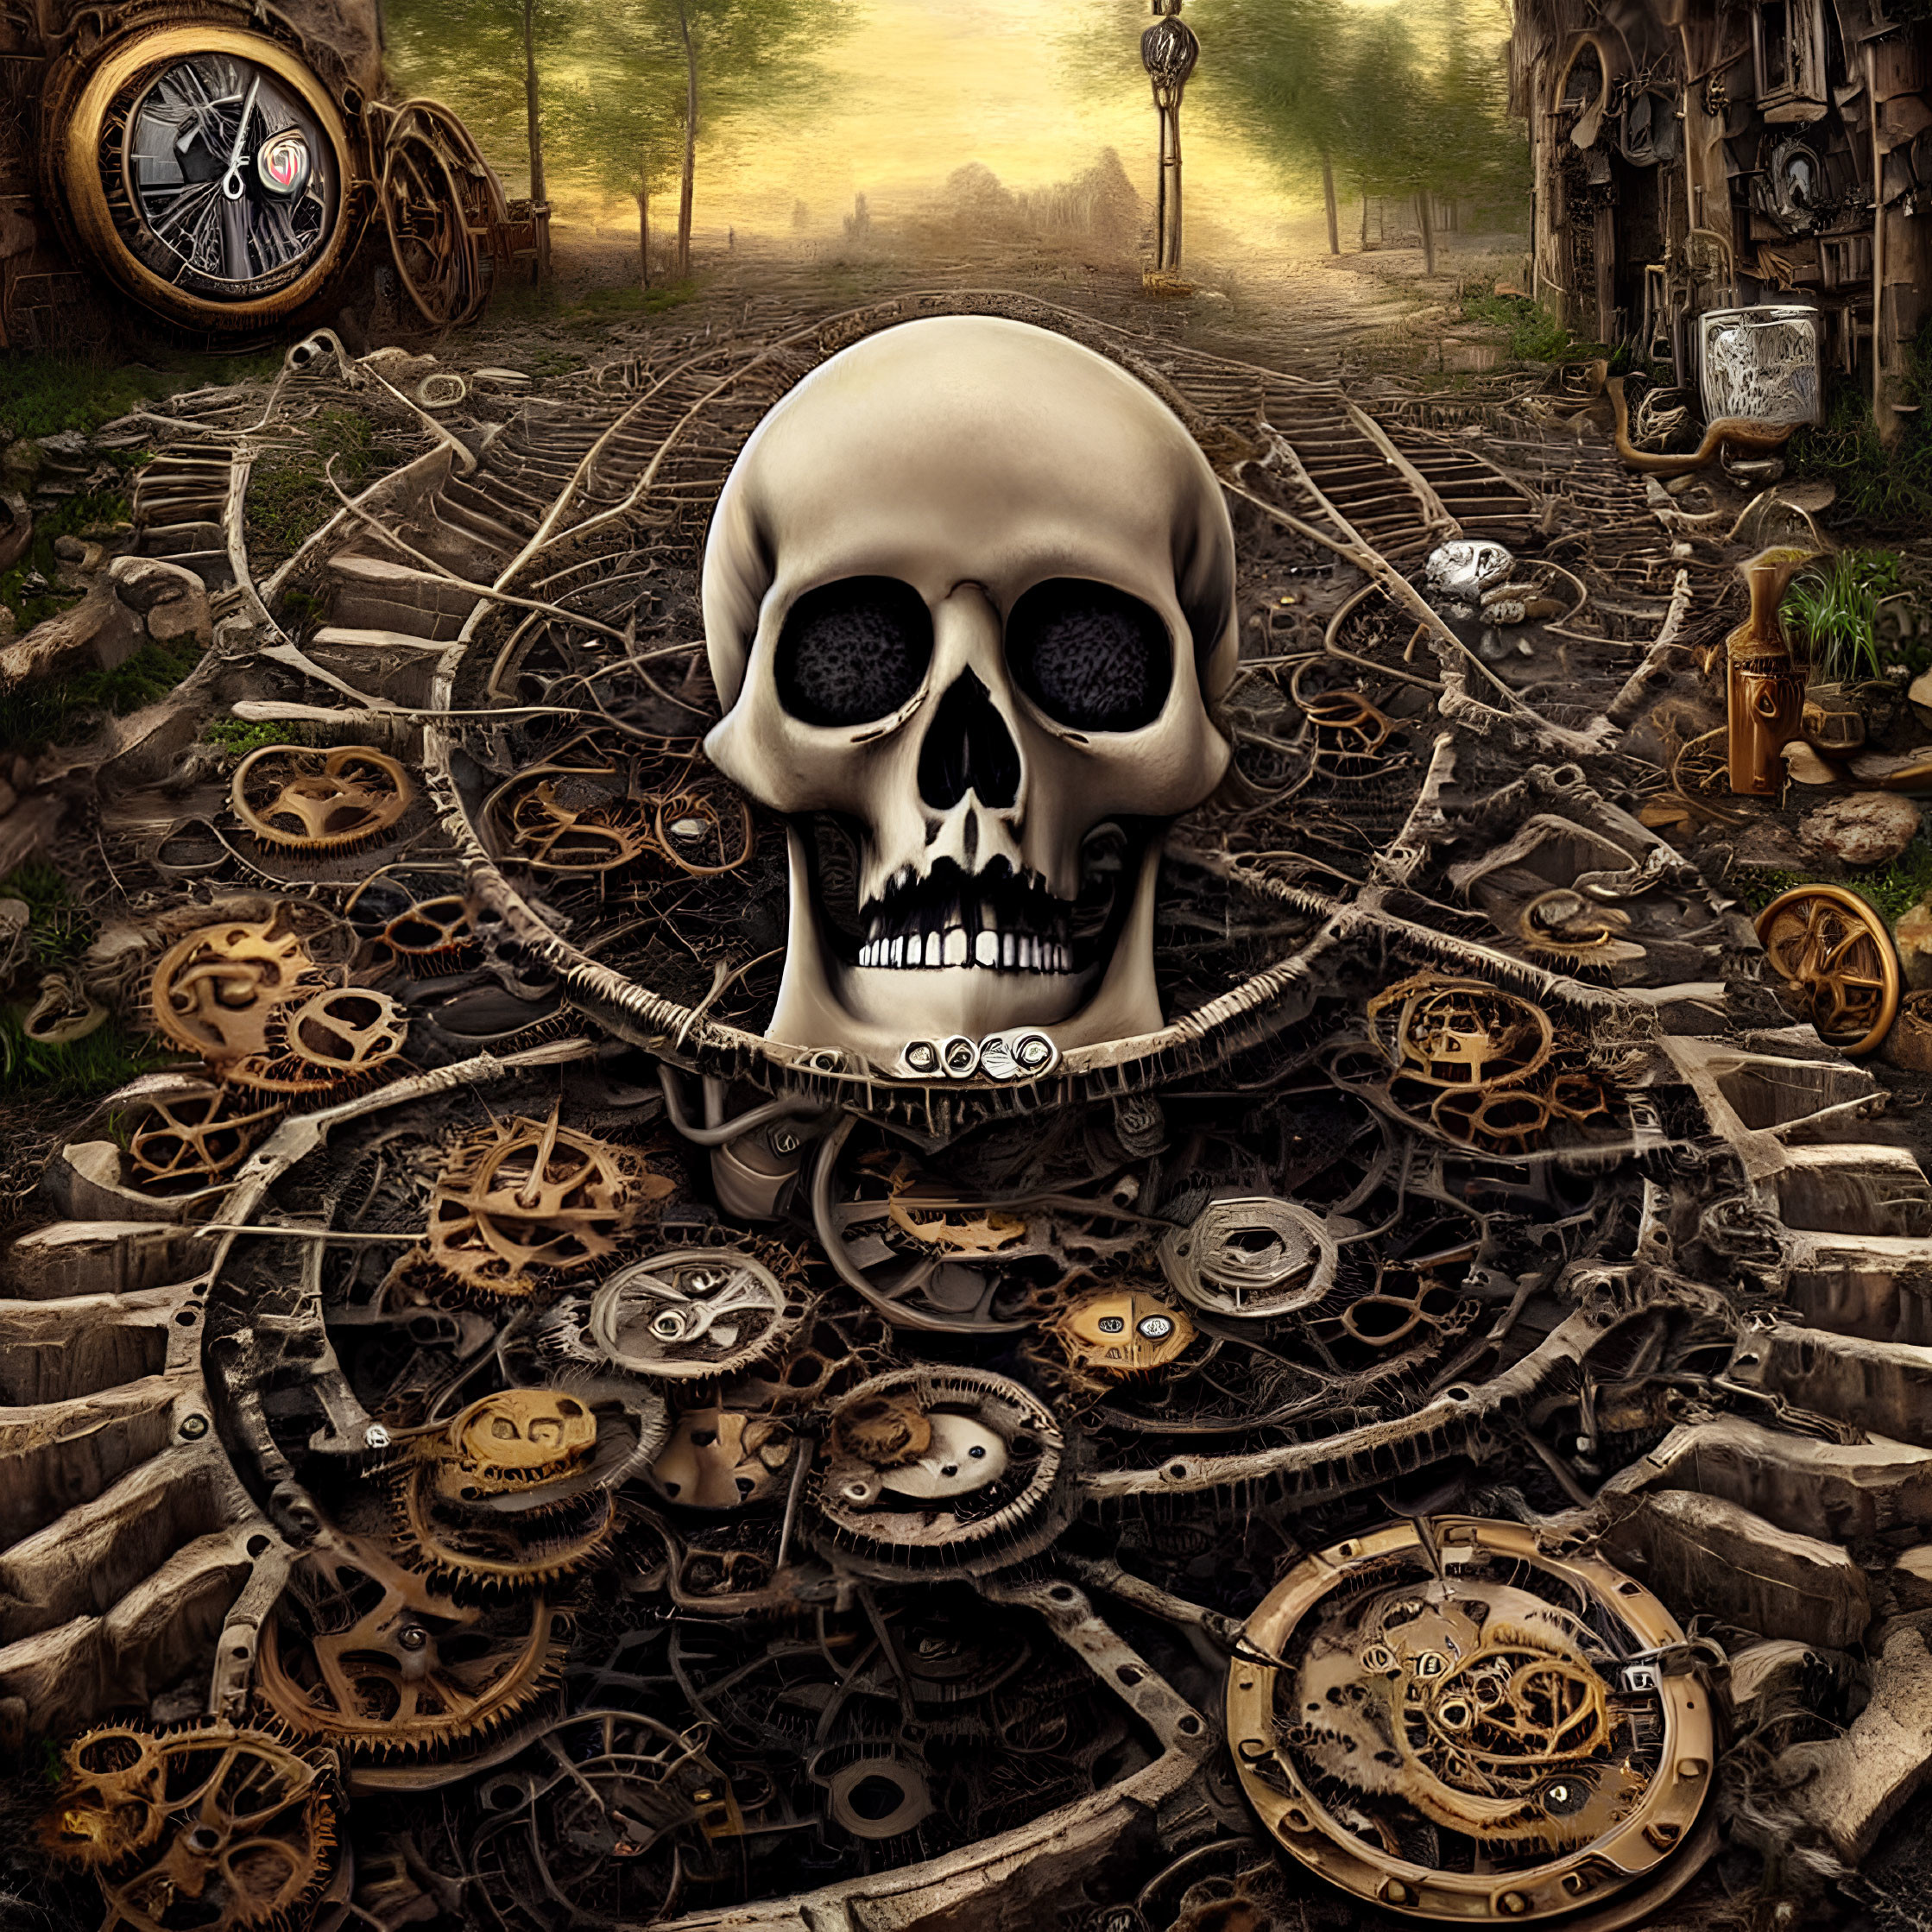 Skull on Gears in Steampunk Landscape